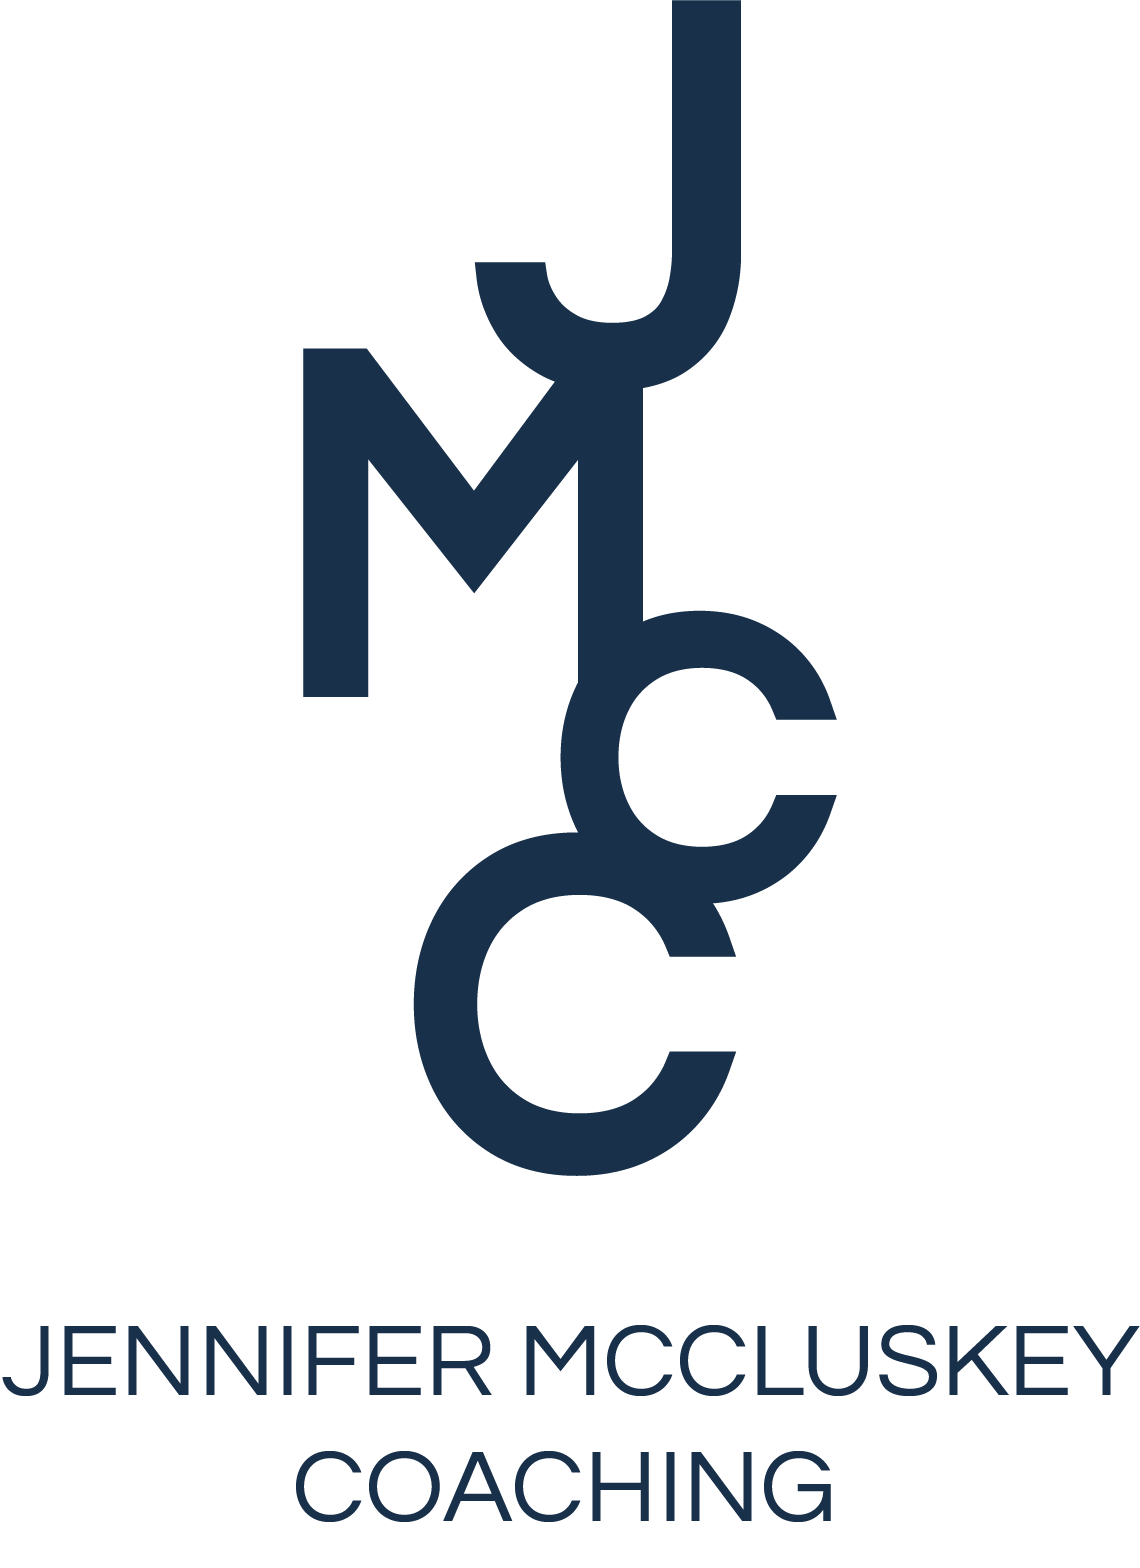 Jennifer McCluskey Coaching